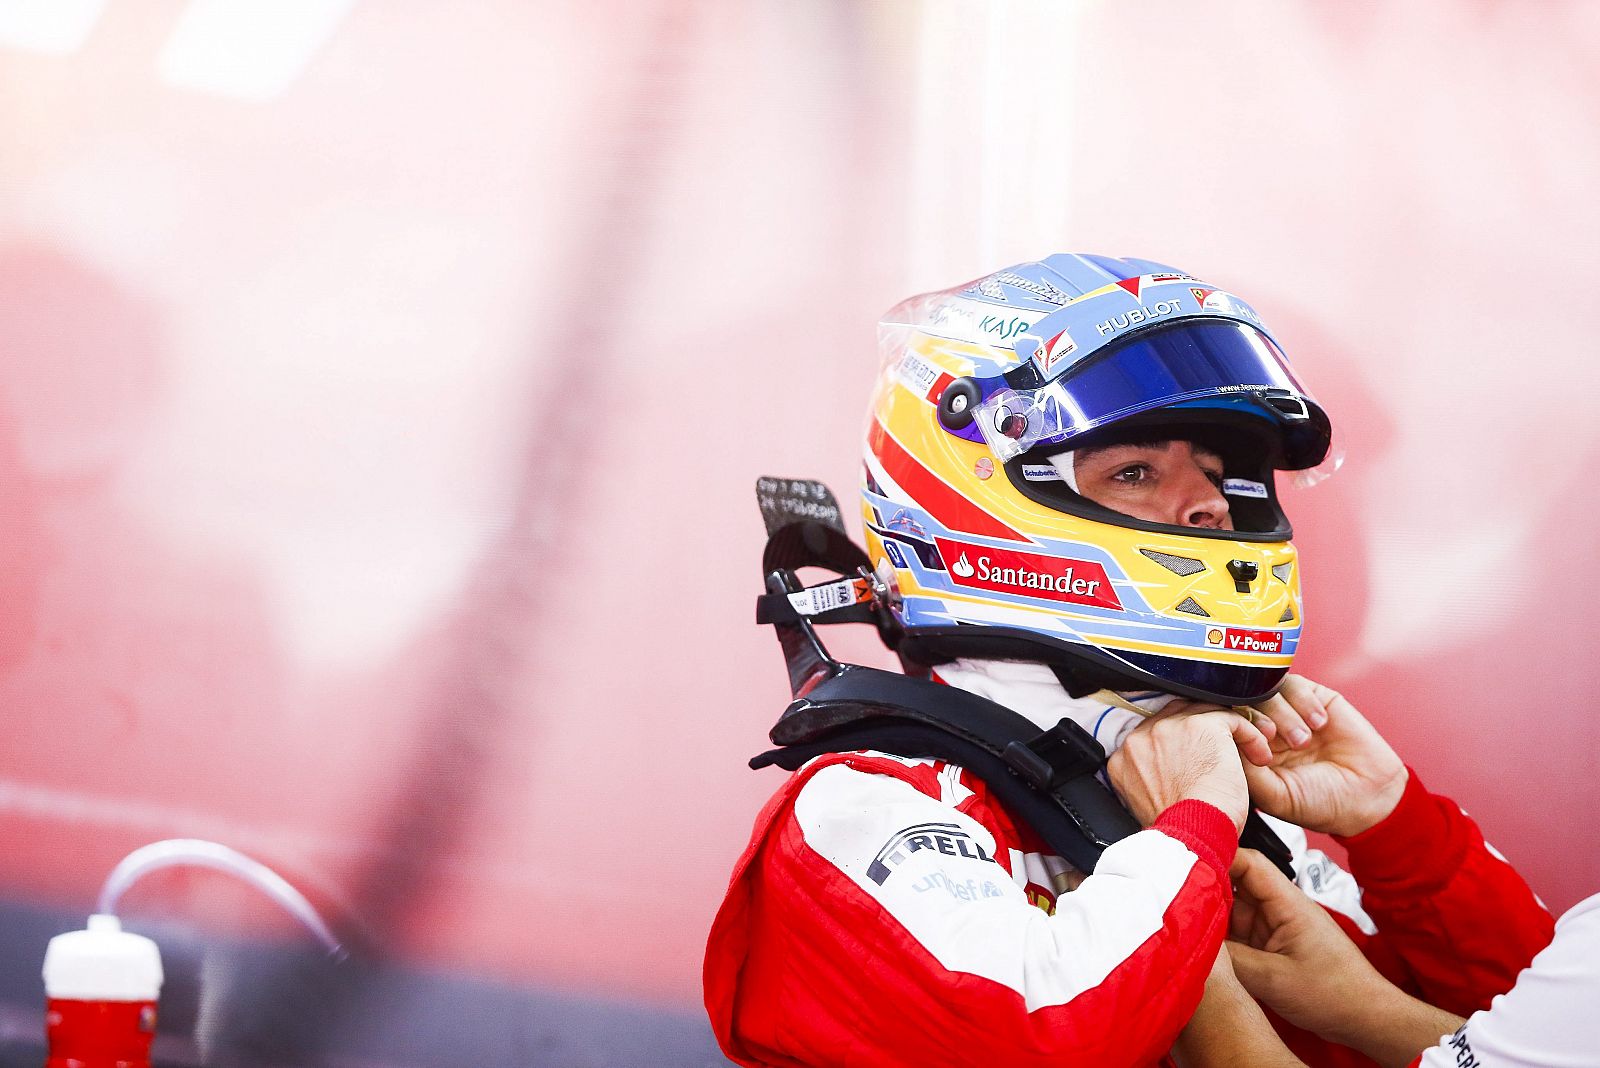 El piloto español de Fórmula Uno Fernando Alonso (Ferrari) se coloca el casco en el garaje de su escudería.